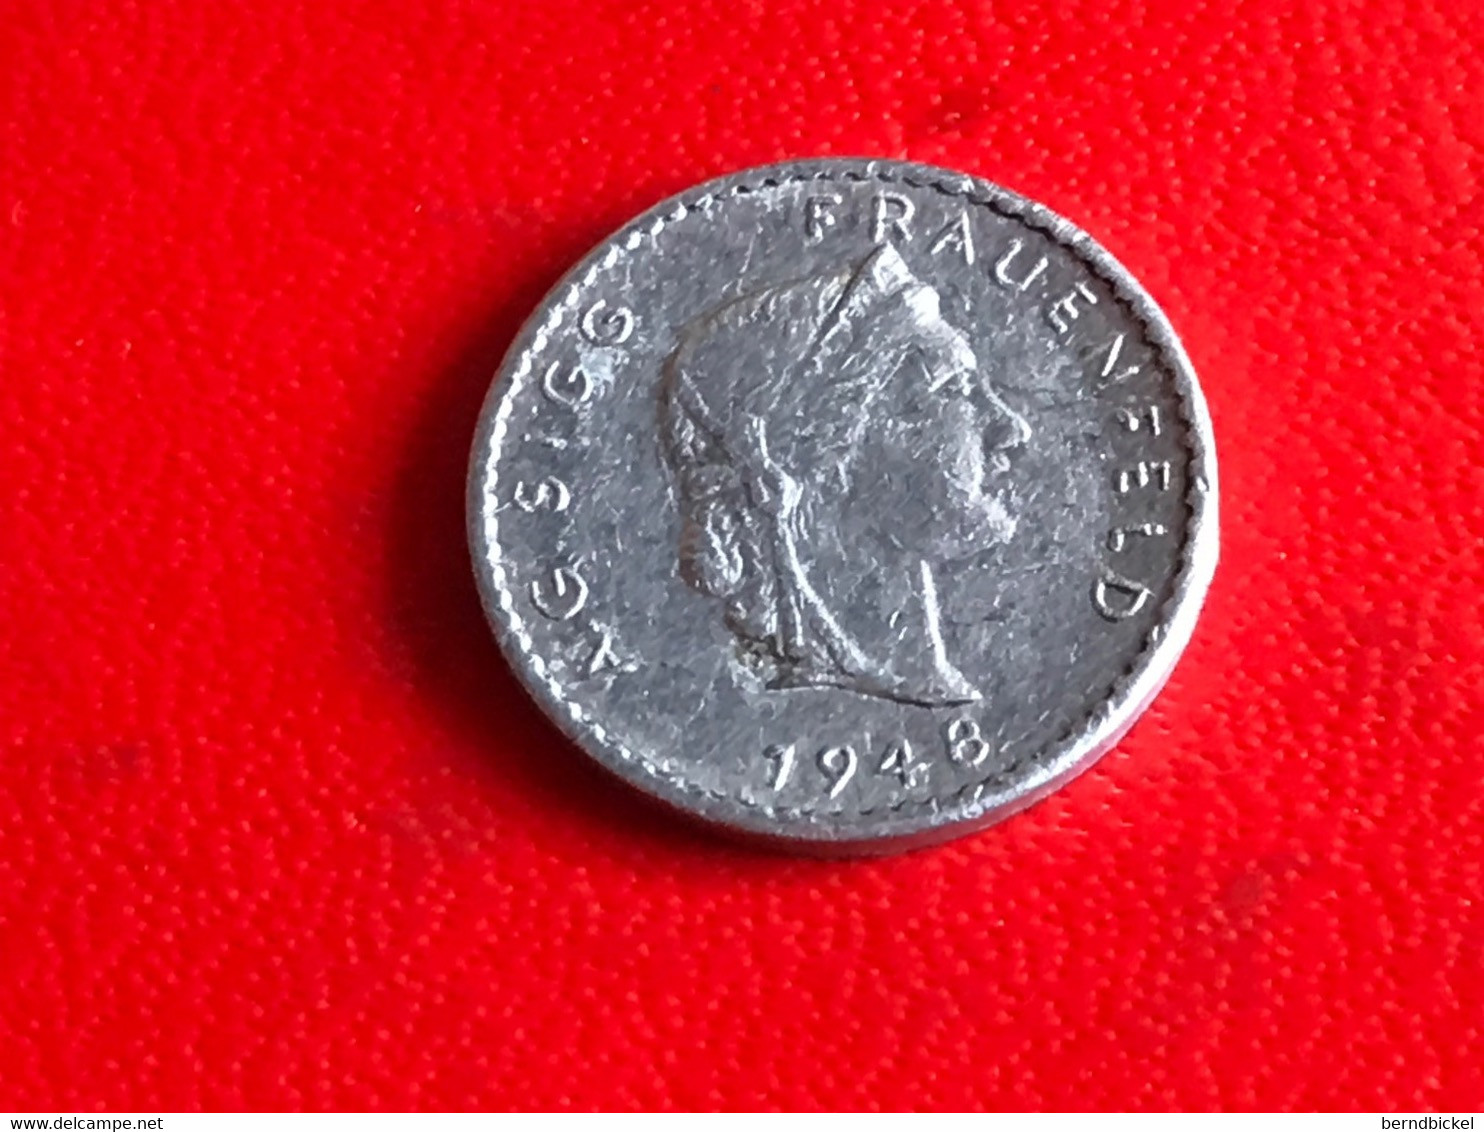 AG Sigg Frauenfeld Schweiz 1948 " 10 " - Souvenirmunten (elongated Coins)